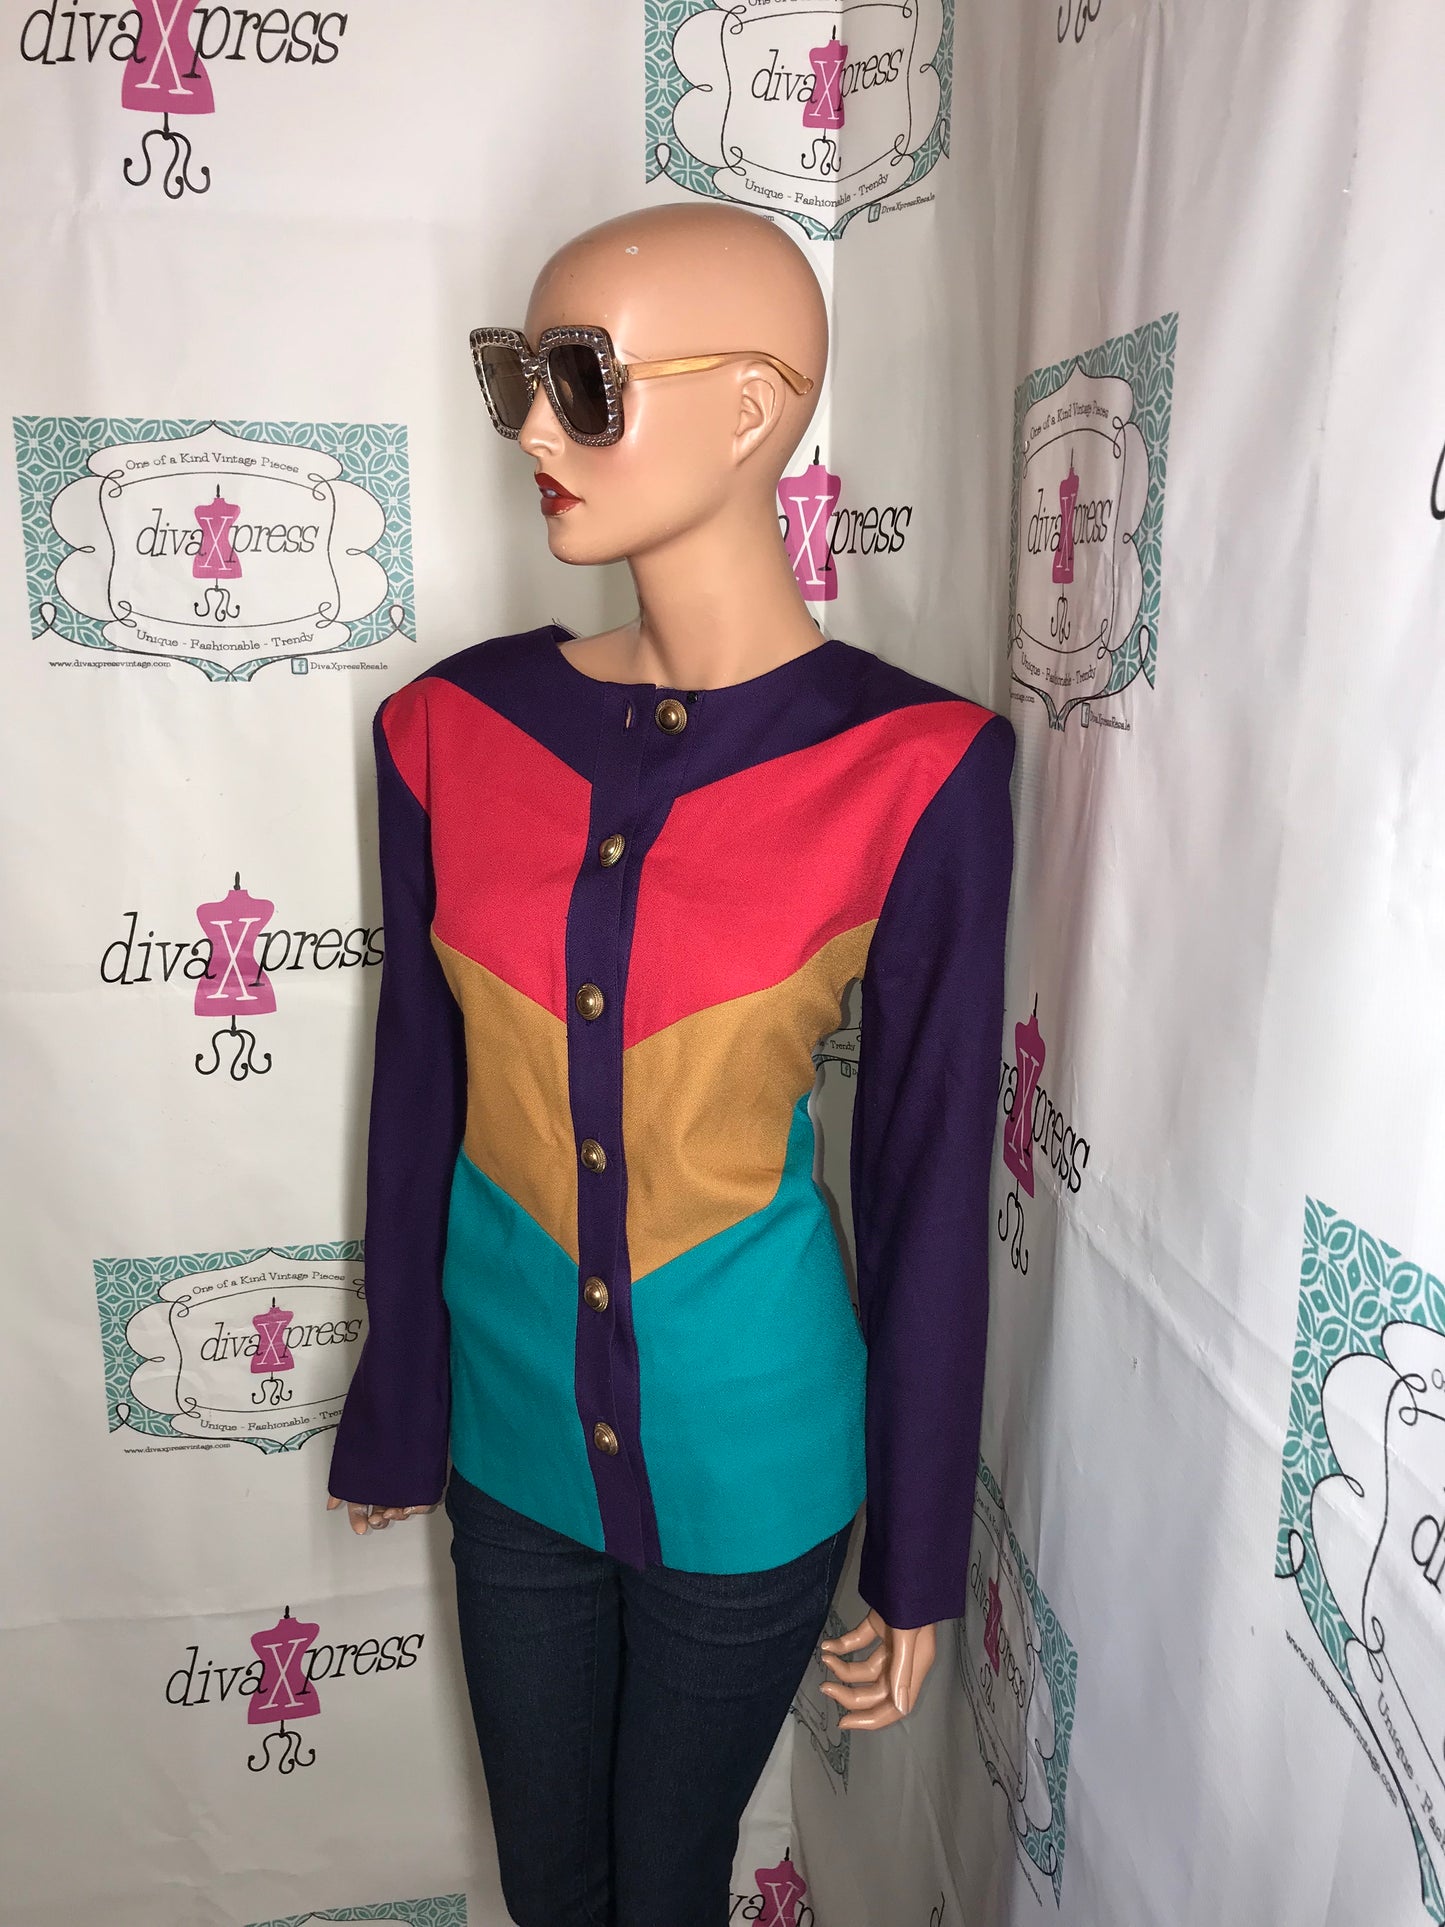 Vintage Megan Moore Purple Colorful Top/Blazer Size M